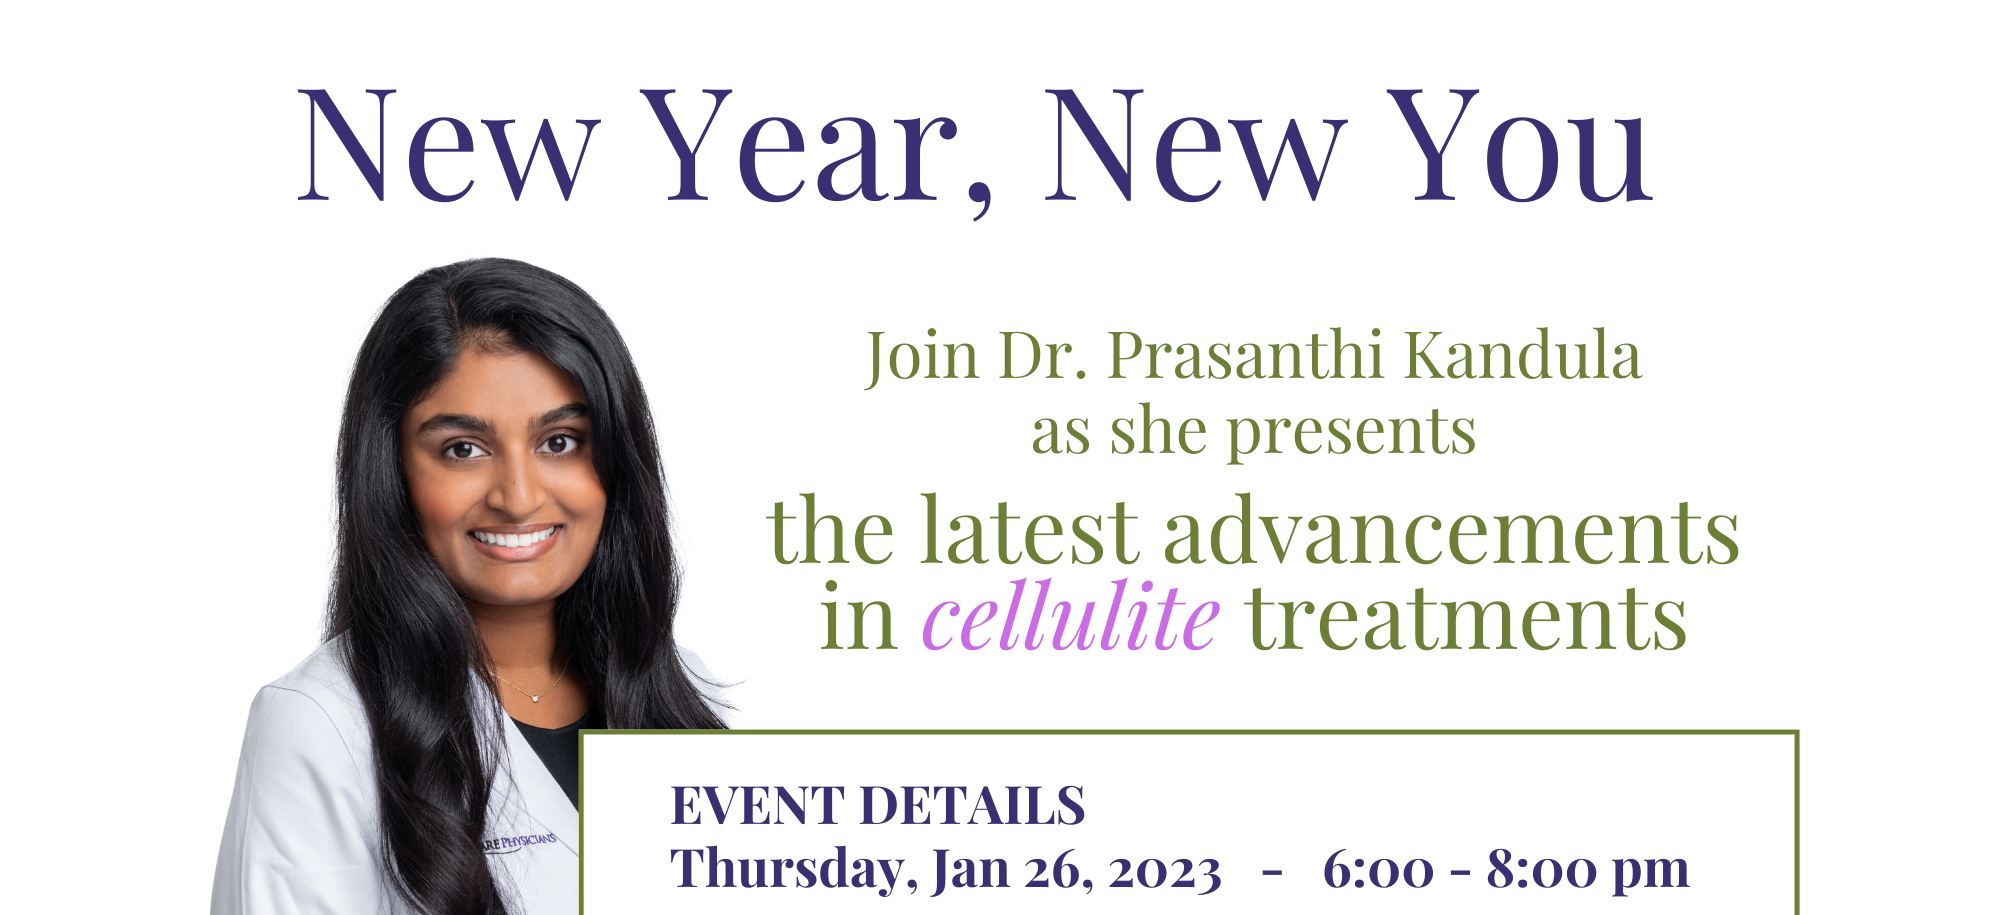 Flyer for Dr. Prasanthi's Cellulite event